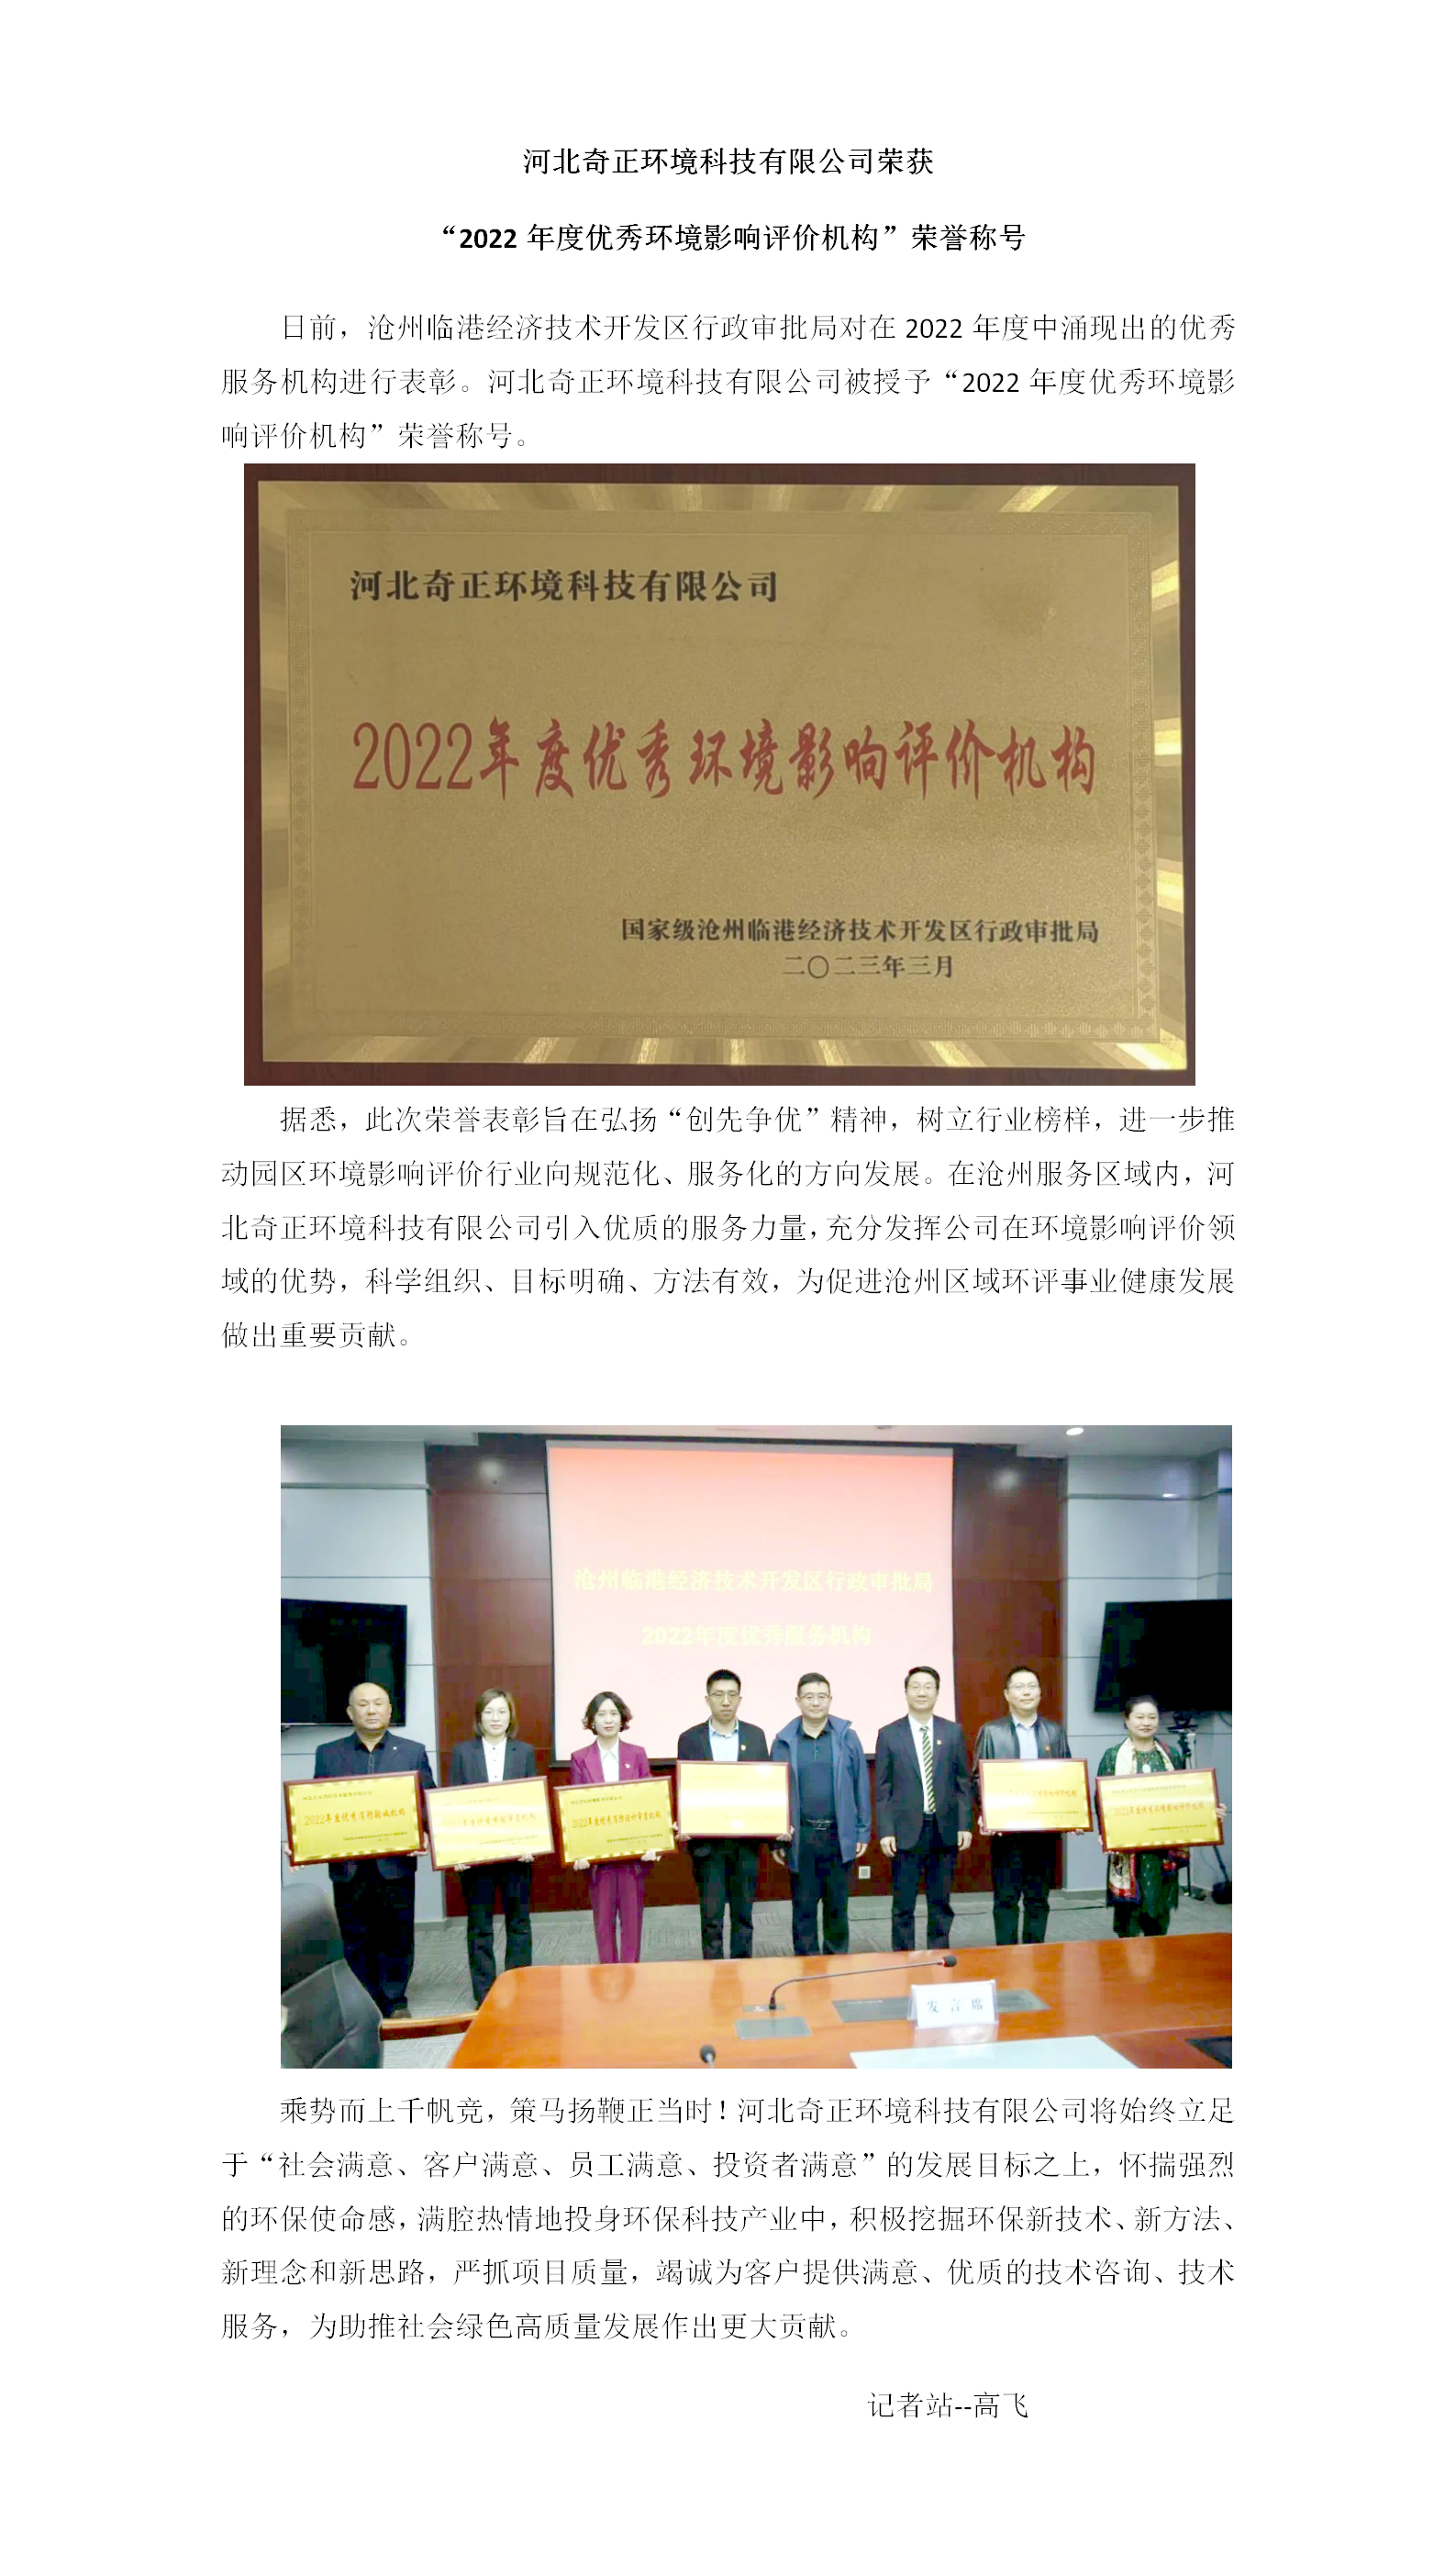 河北奇正荣获“2022年度优秀环境影响评价机构”荣誉称号4.11_01.png